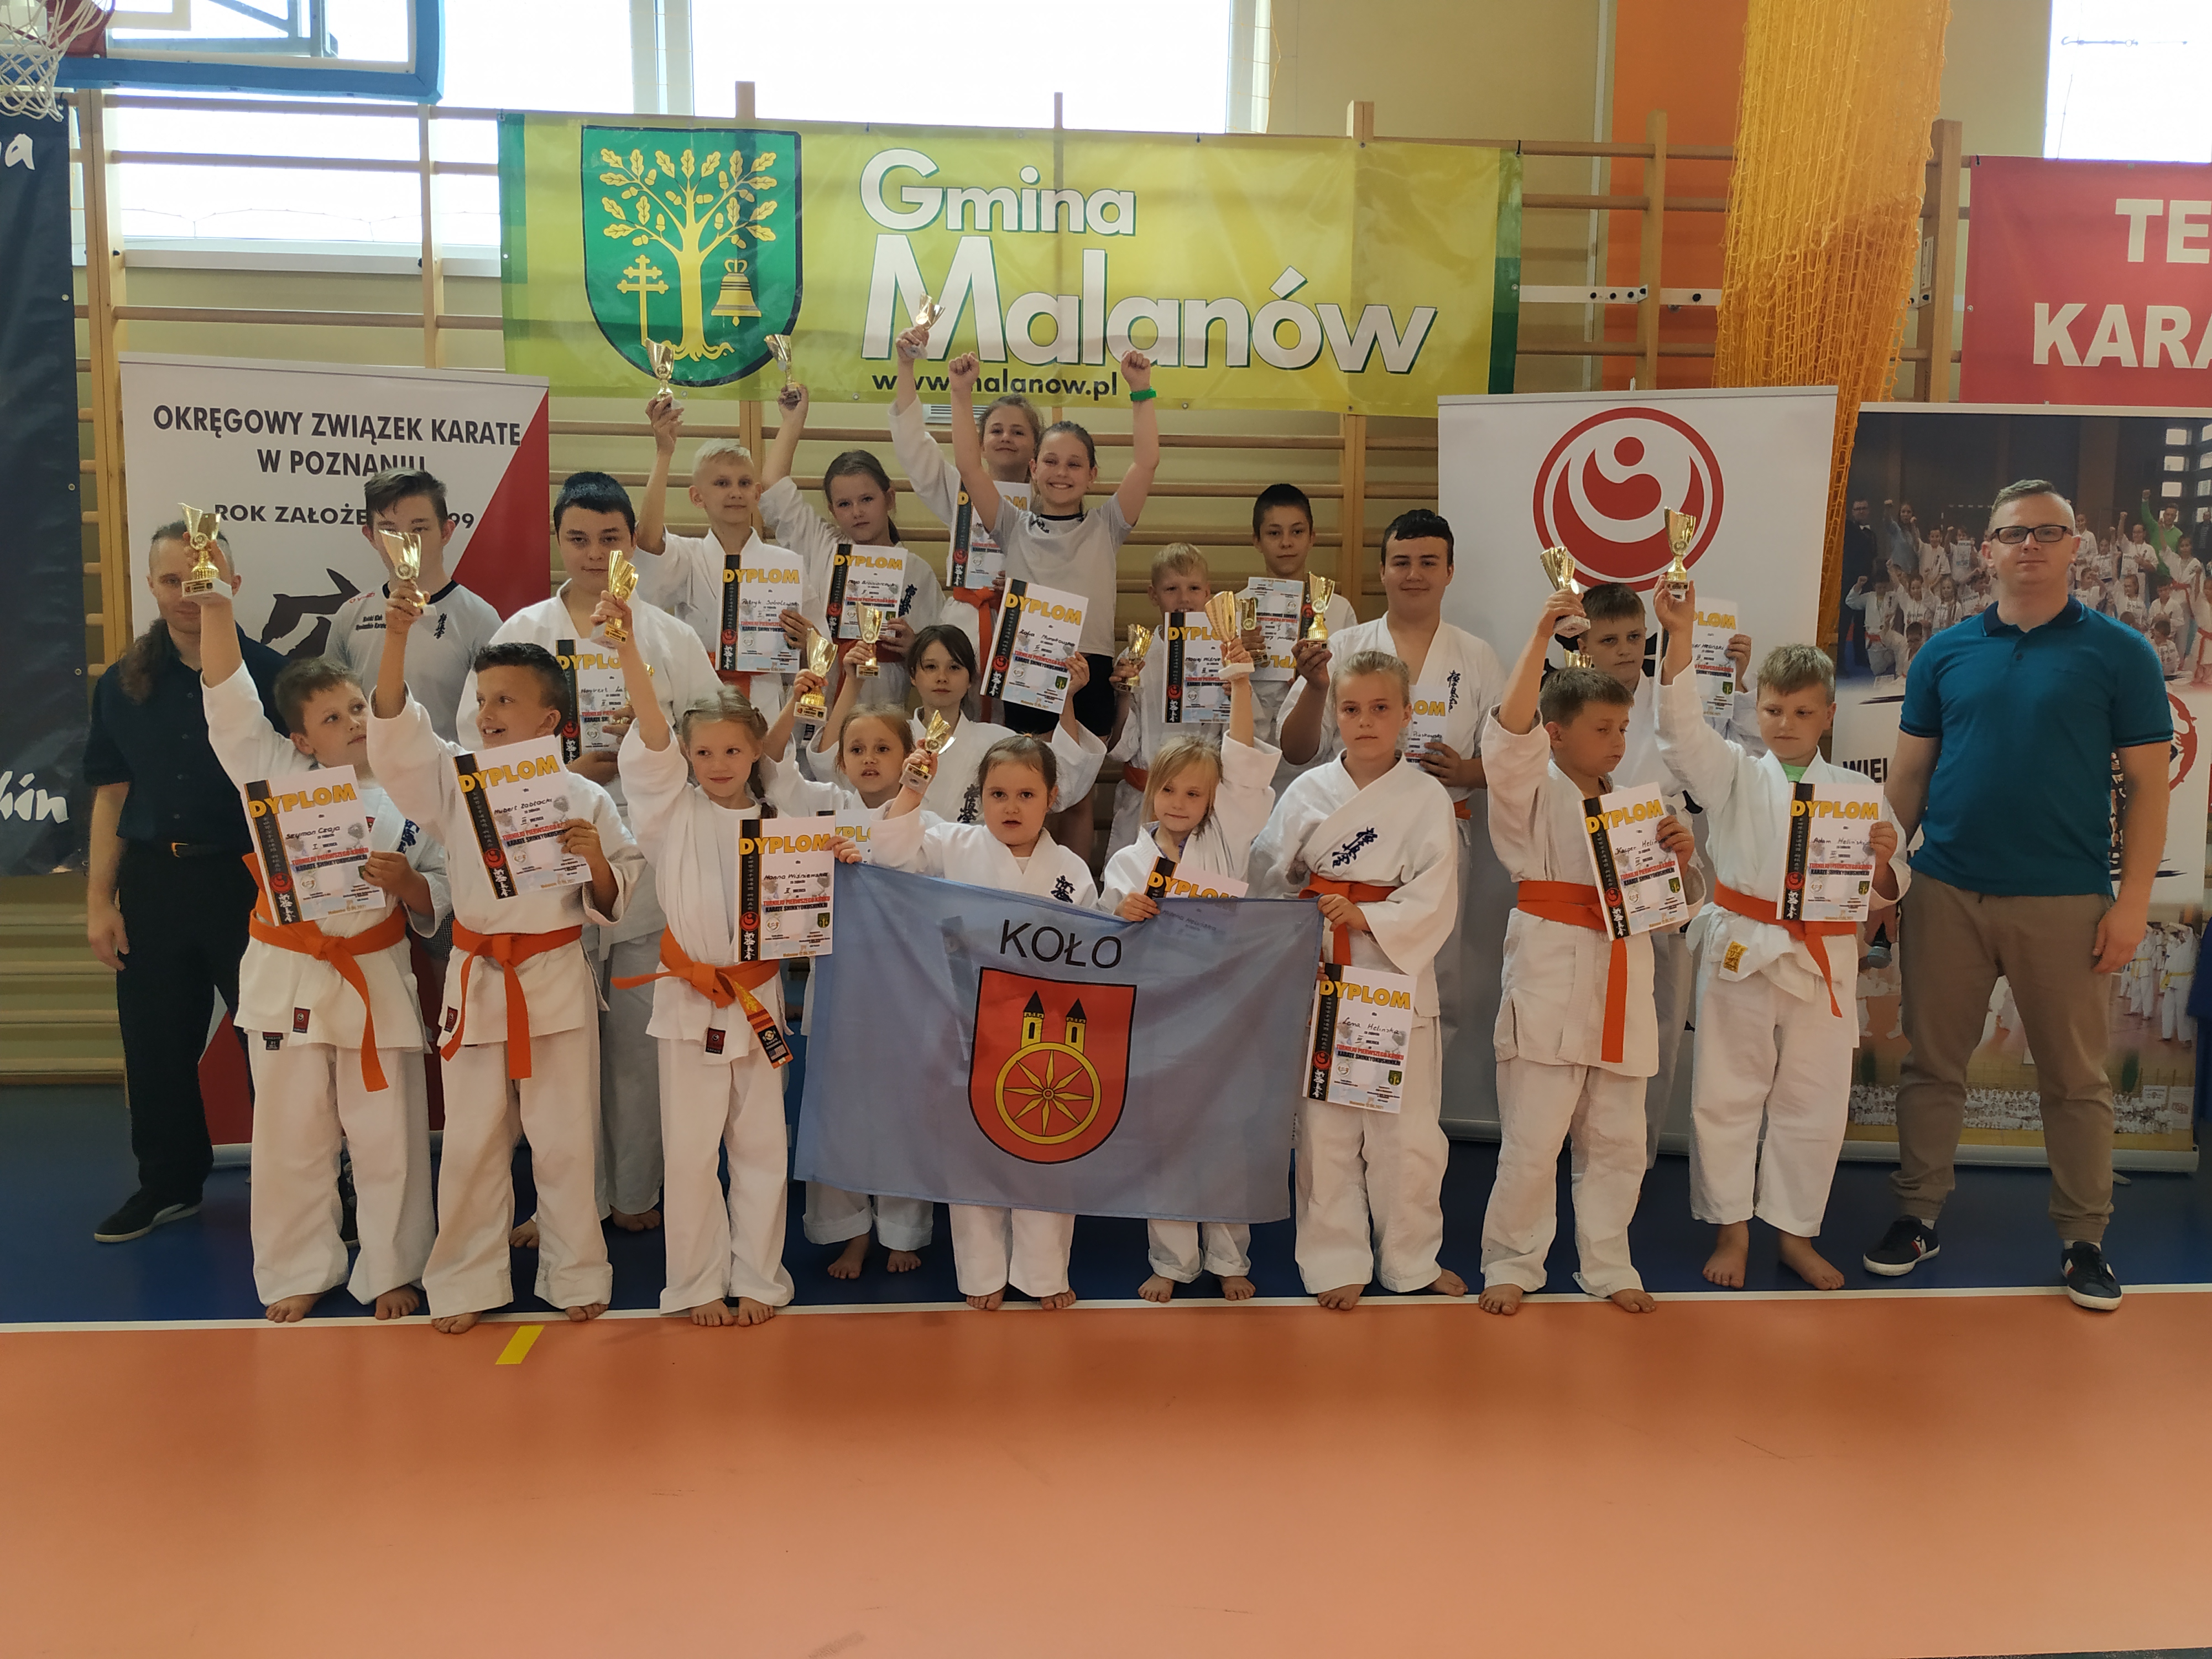 Grupowe zdjęcie kolskich zawodniczek i zawodników z dyplomami i pucharami wraz z opiekunami.